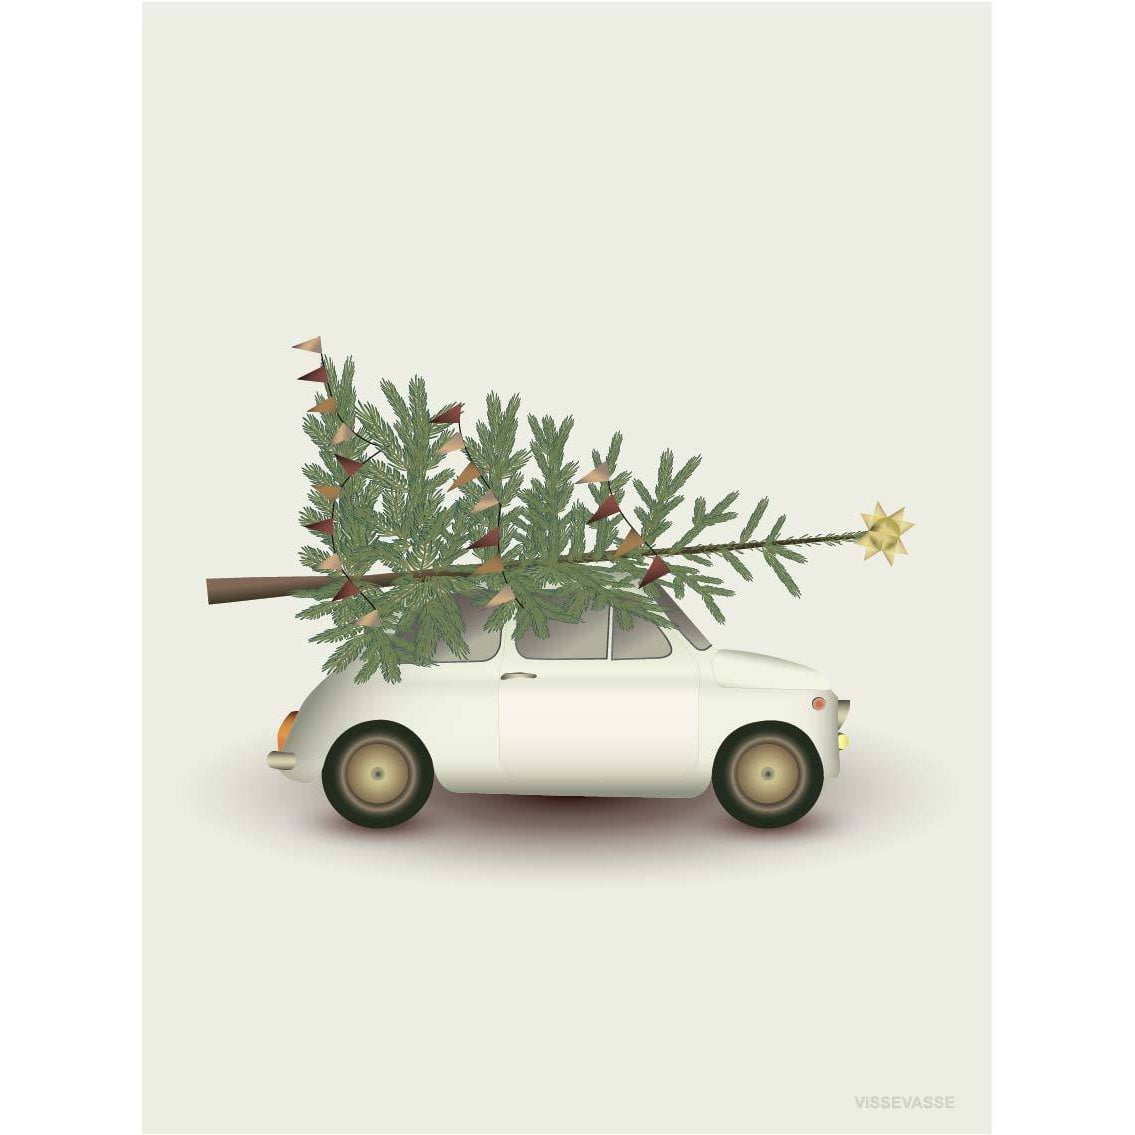 Vissevasse Christmas Tree & Little Car Anledningskort, 10,5x15cm